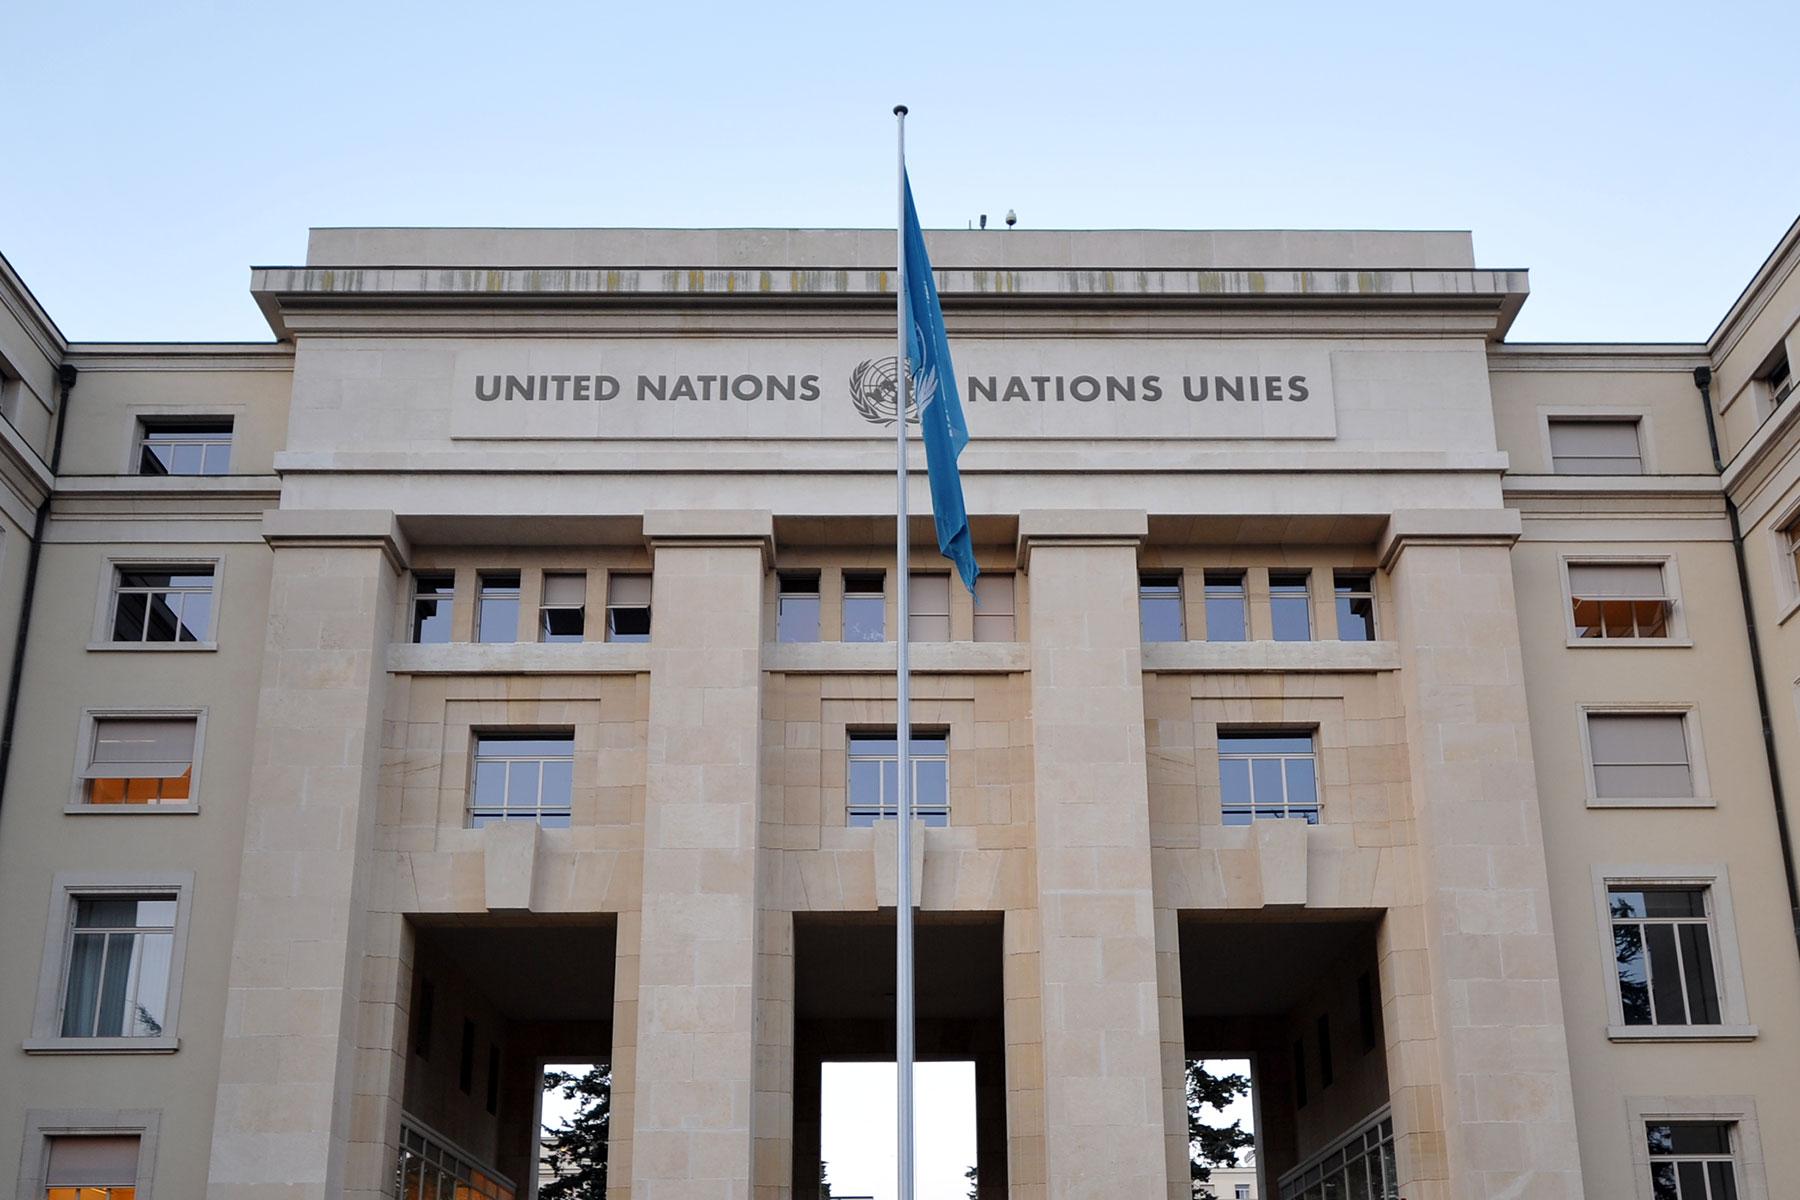 Der Palast der Nationen in Genf, in dem der Menschenrechtsrat tagt. Aufgrund der Pandemie fand das Webinar online statt. Foto: LWB/C. Kästner